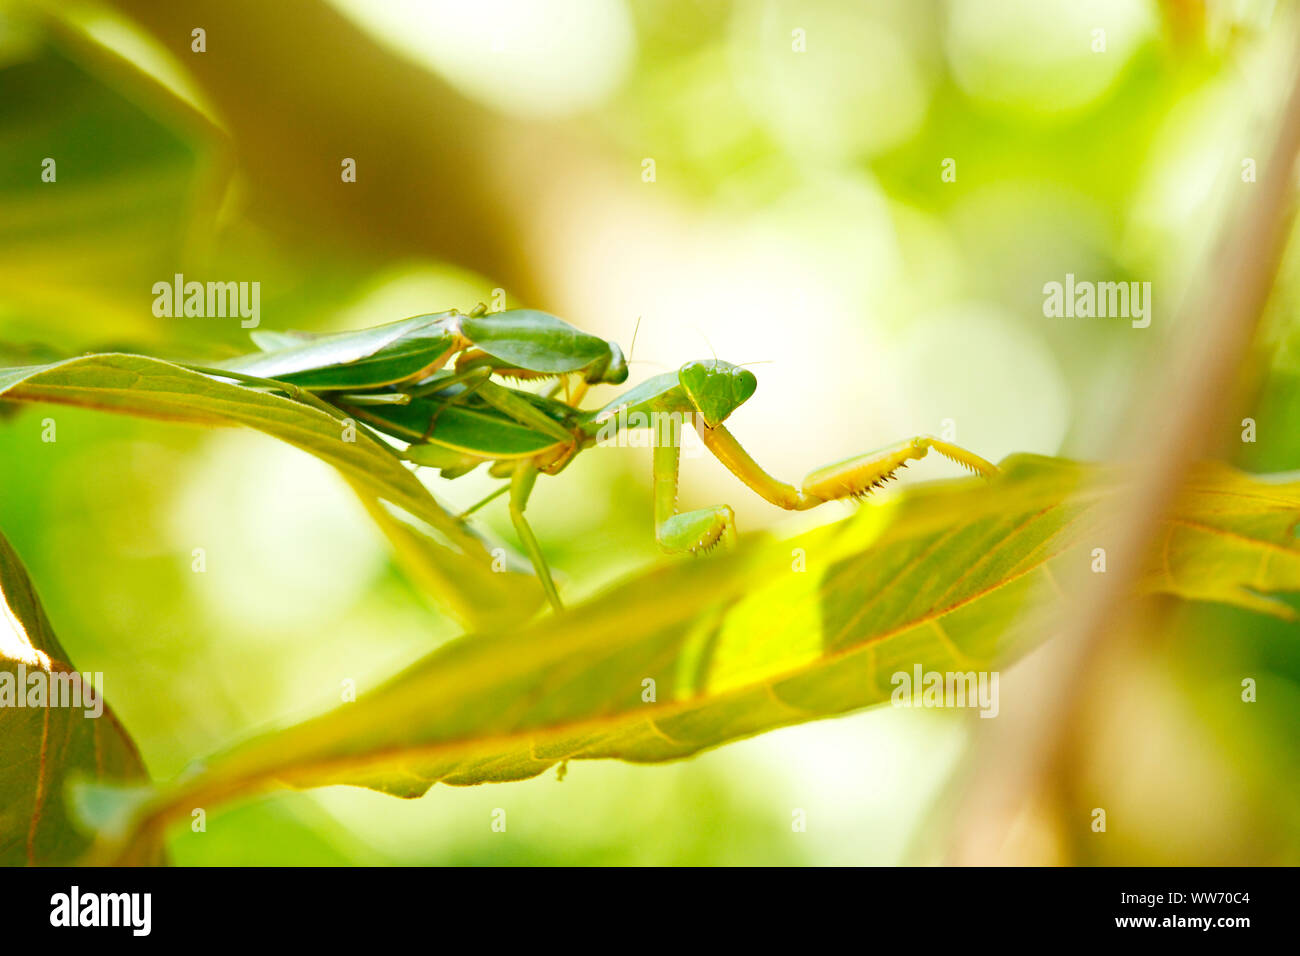 Sumatra, Bukit Lawang, praying mantis Stock Photo